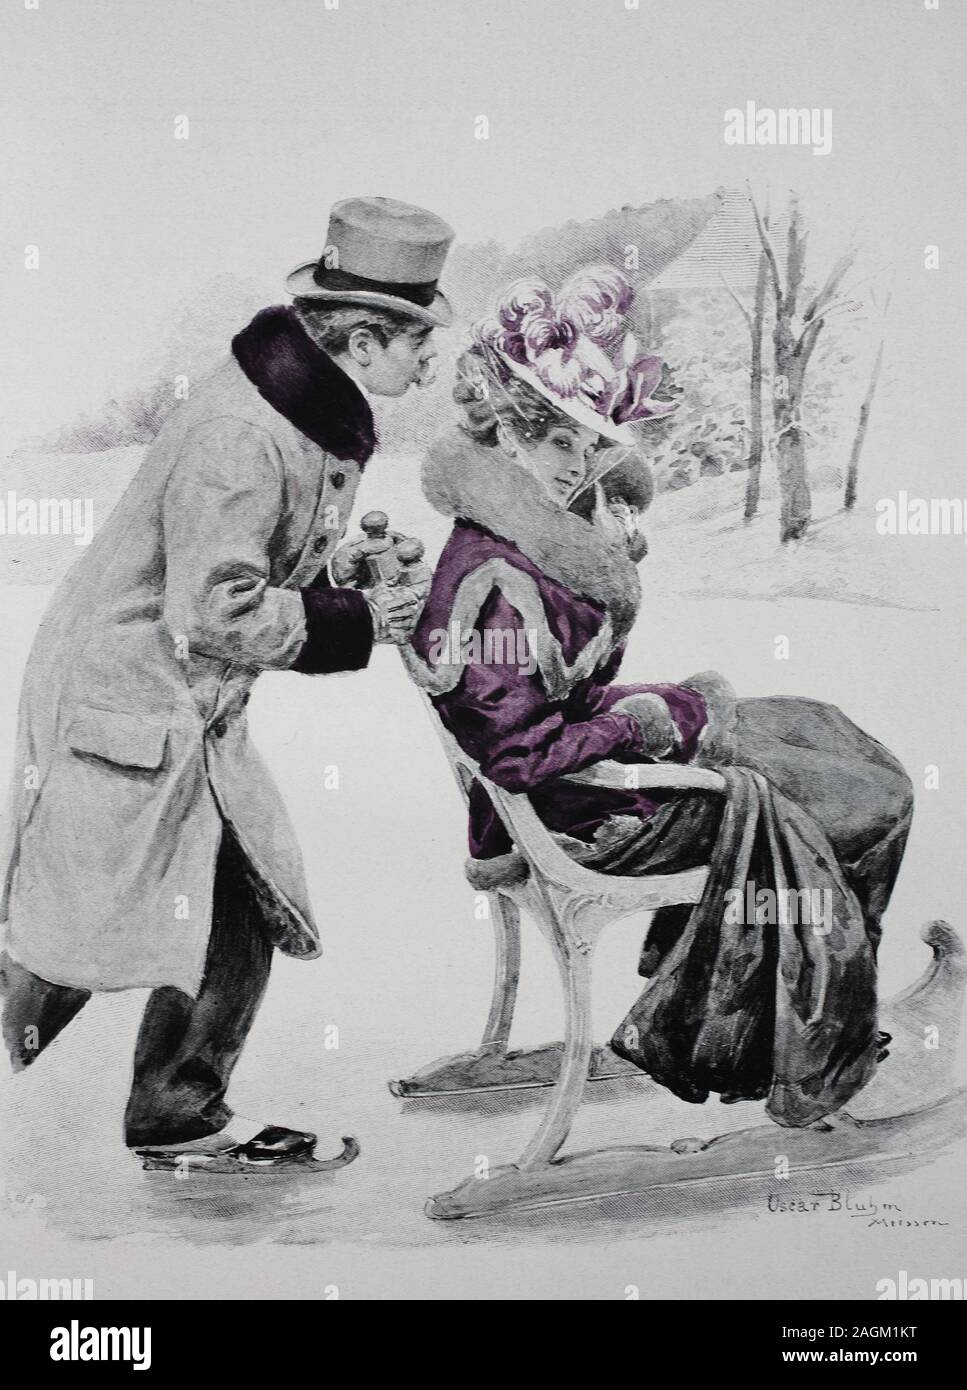 Man with skates slides his wife on a chair sled across the ice, original print from the year 1899, Der Mann mit Schlittschuhen schiebt seine Frau auf einem Stuhlschlitten über das Eis, Reproduktion einer Originalvorlage aus dem 19. Jahrhundert, digital verbessert Stock Photo